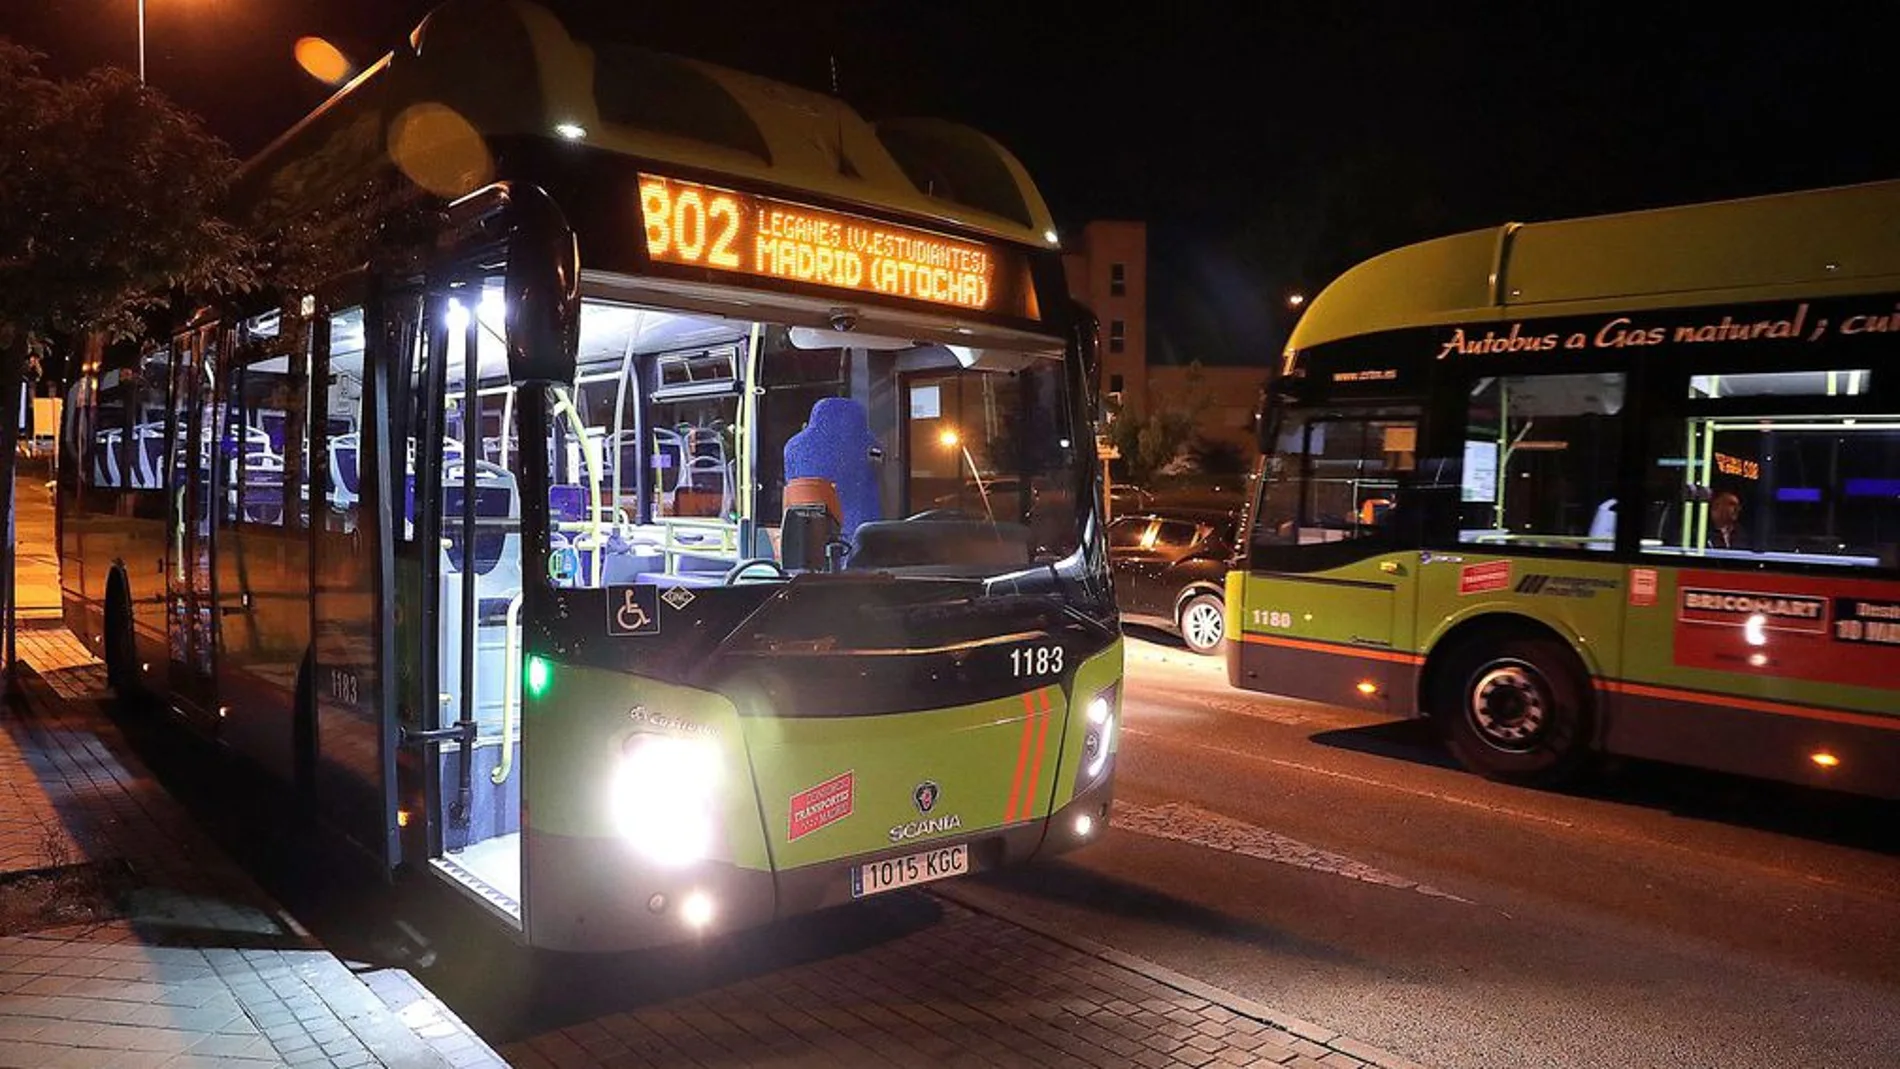 Proyecto piloto de parada a demanda en autobuses nocturnos de la Comunidad de Madrid